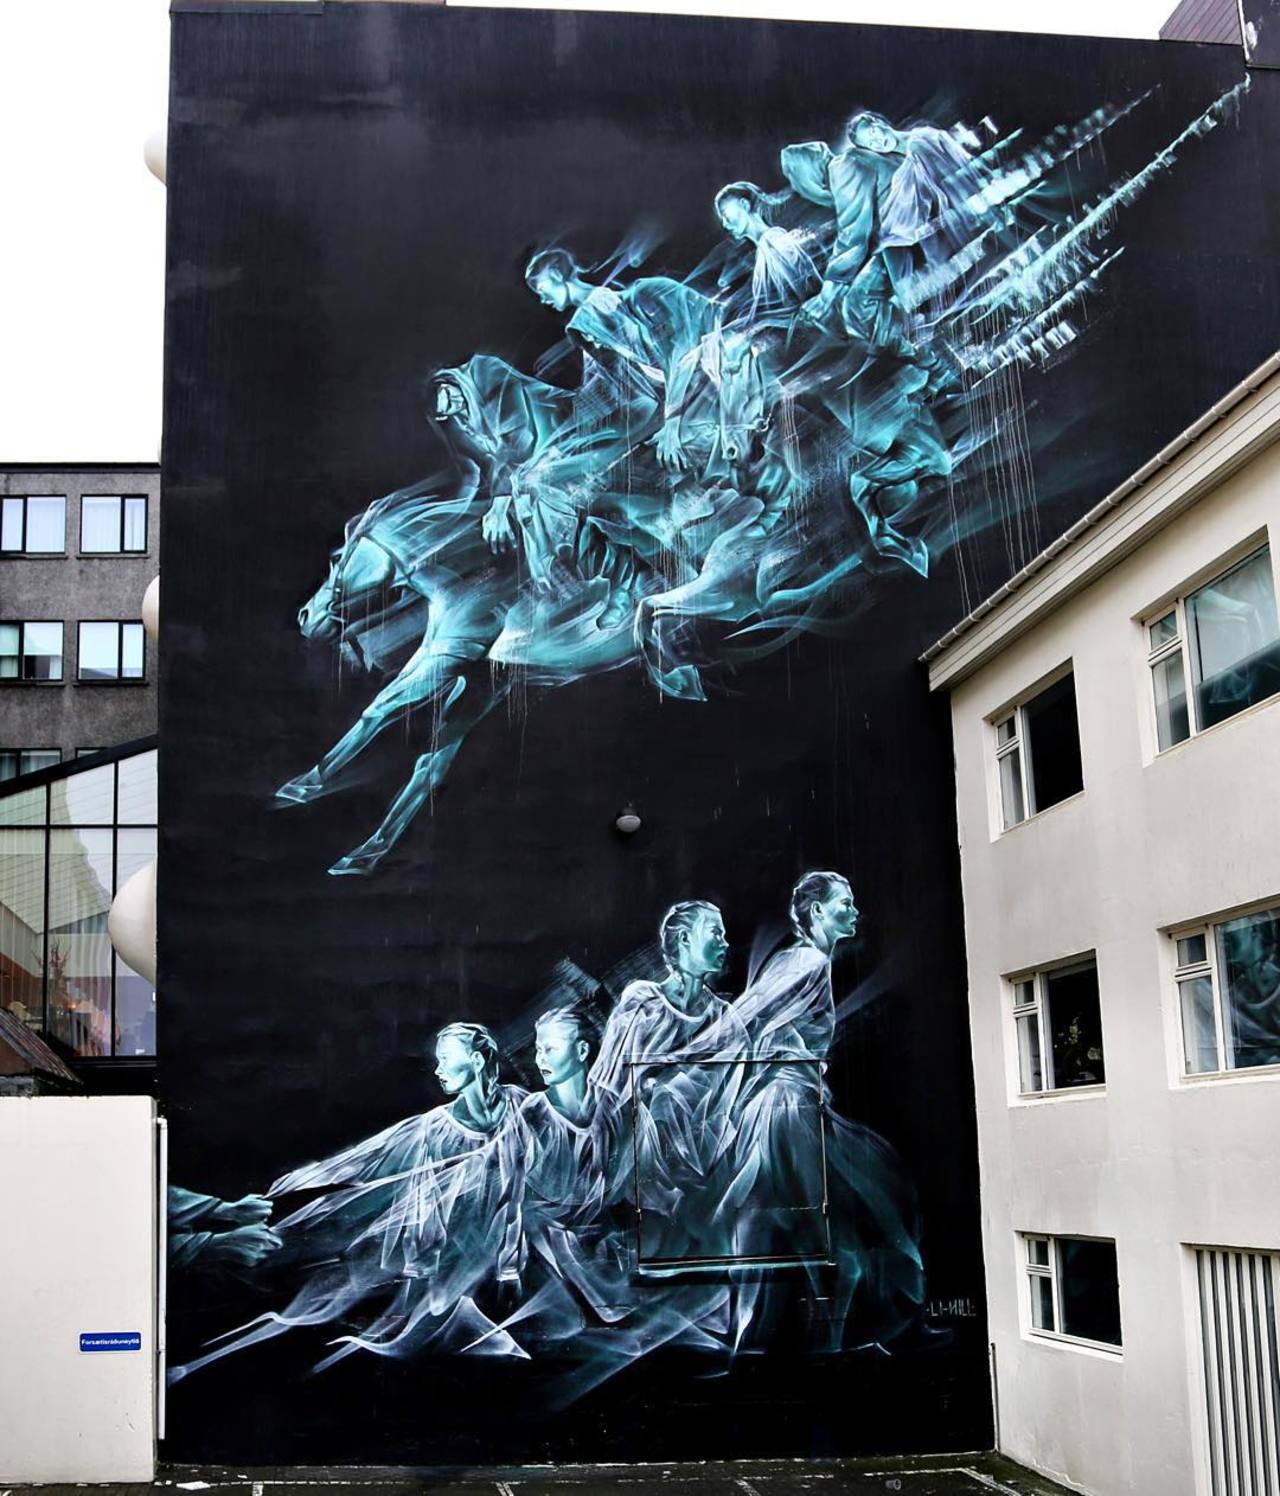 Li-Hill unveils a beautiful mural in Reykjavik, Iceland. #StreetArt #Graffiti #Mural http://t.co/V5uqBX1UoP